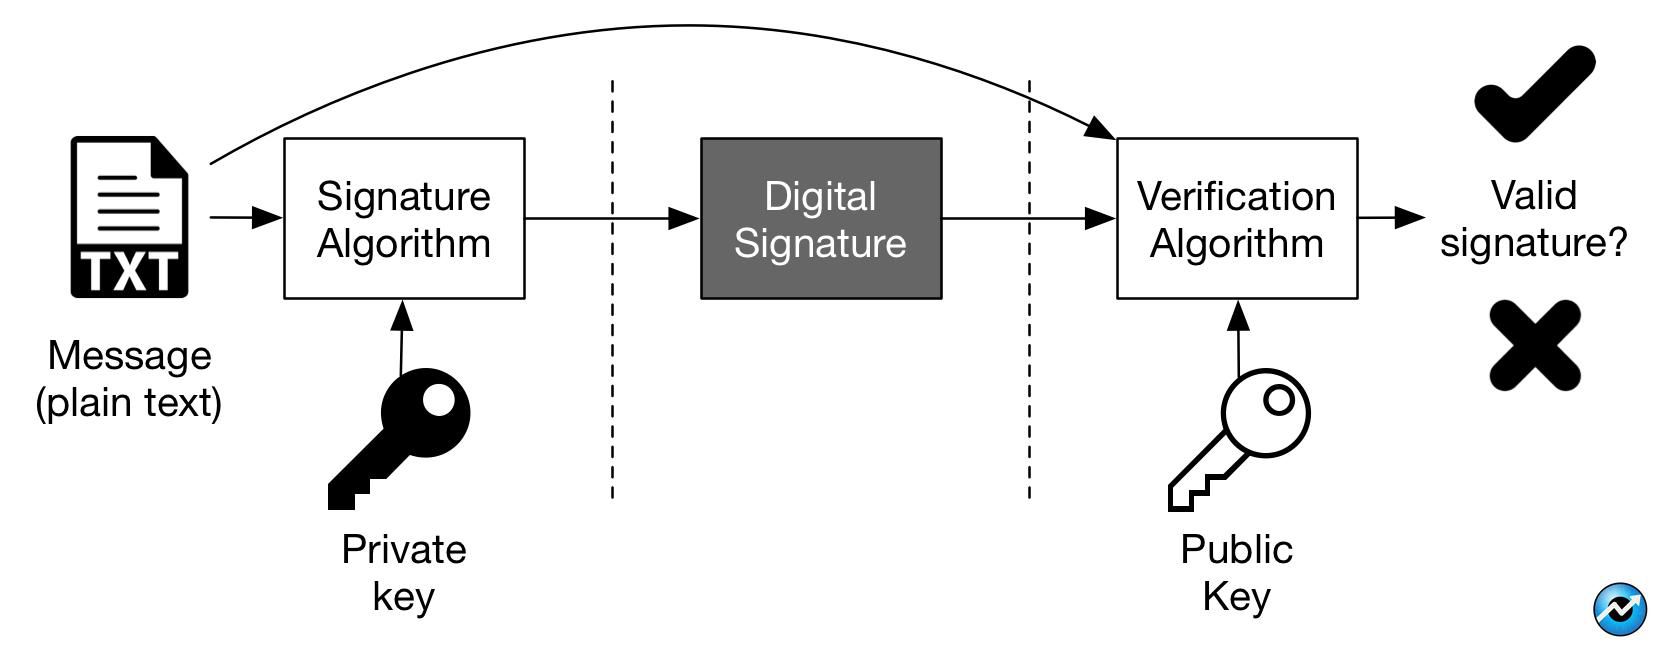 امضای دیجیتال (Digital Signature)